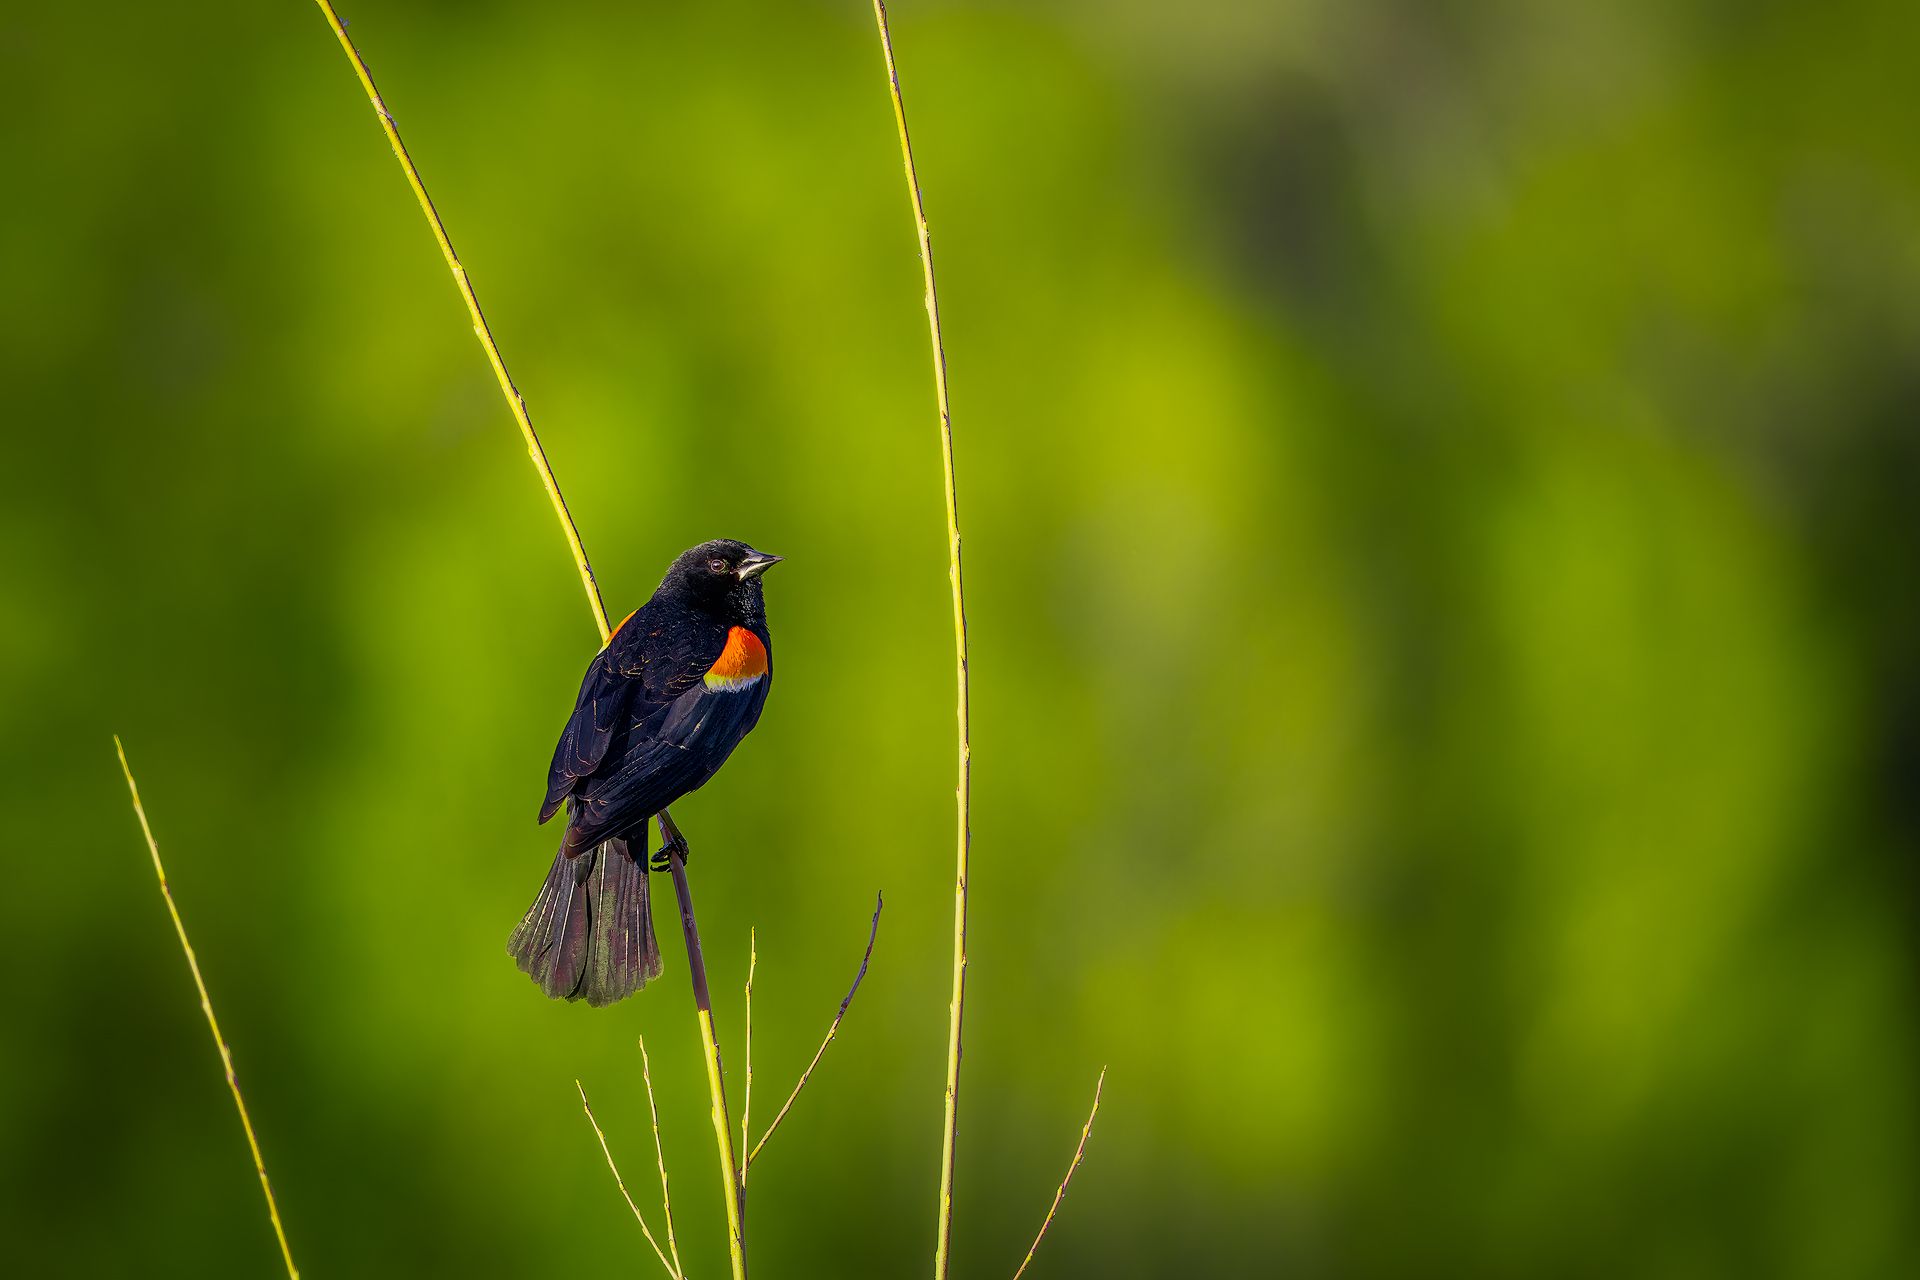 red, wing, blackbird, bird, sing, song, wildlife, animal, nature, natural, spring, Zhao Huapu